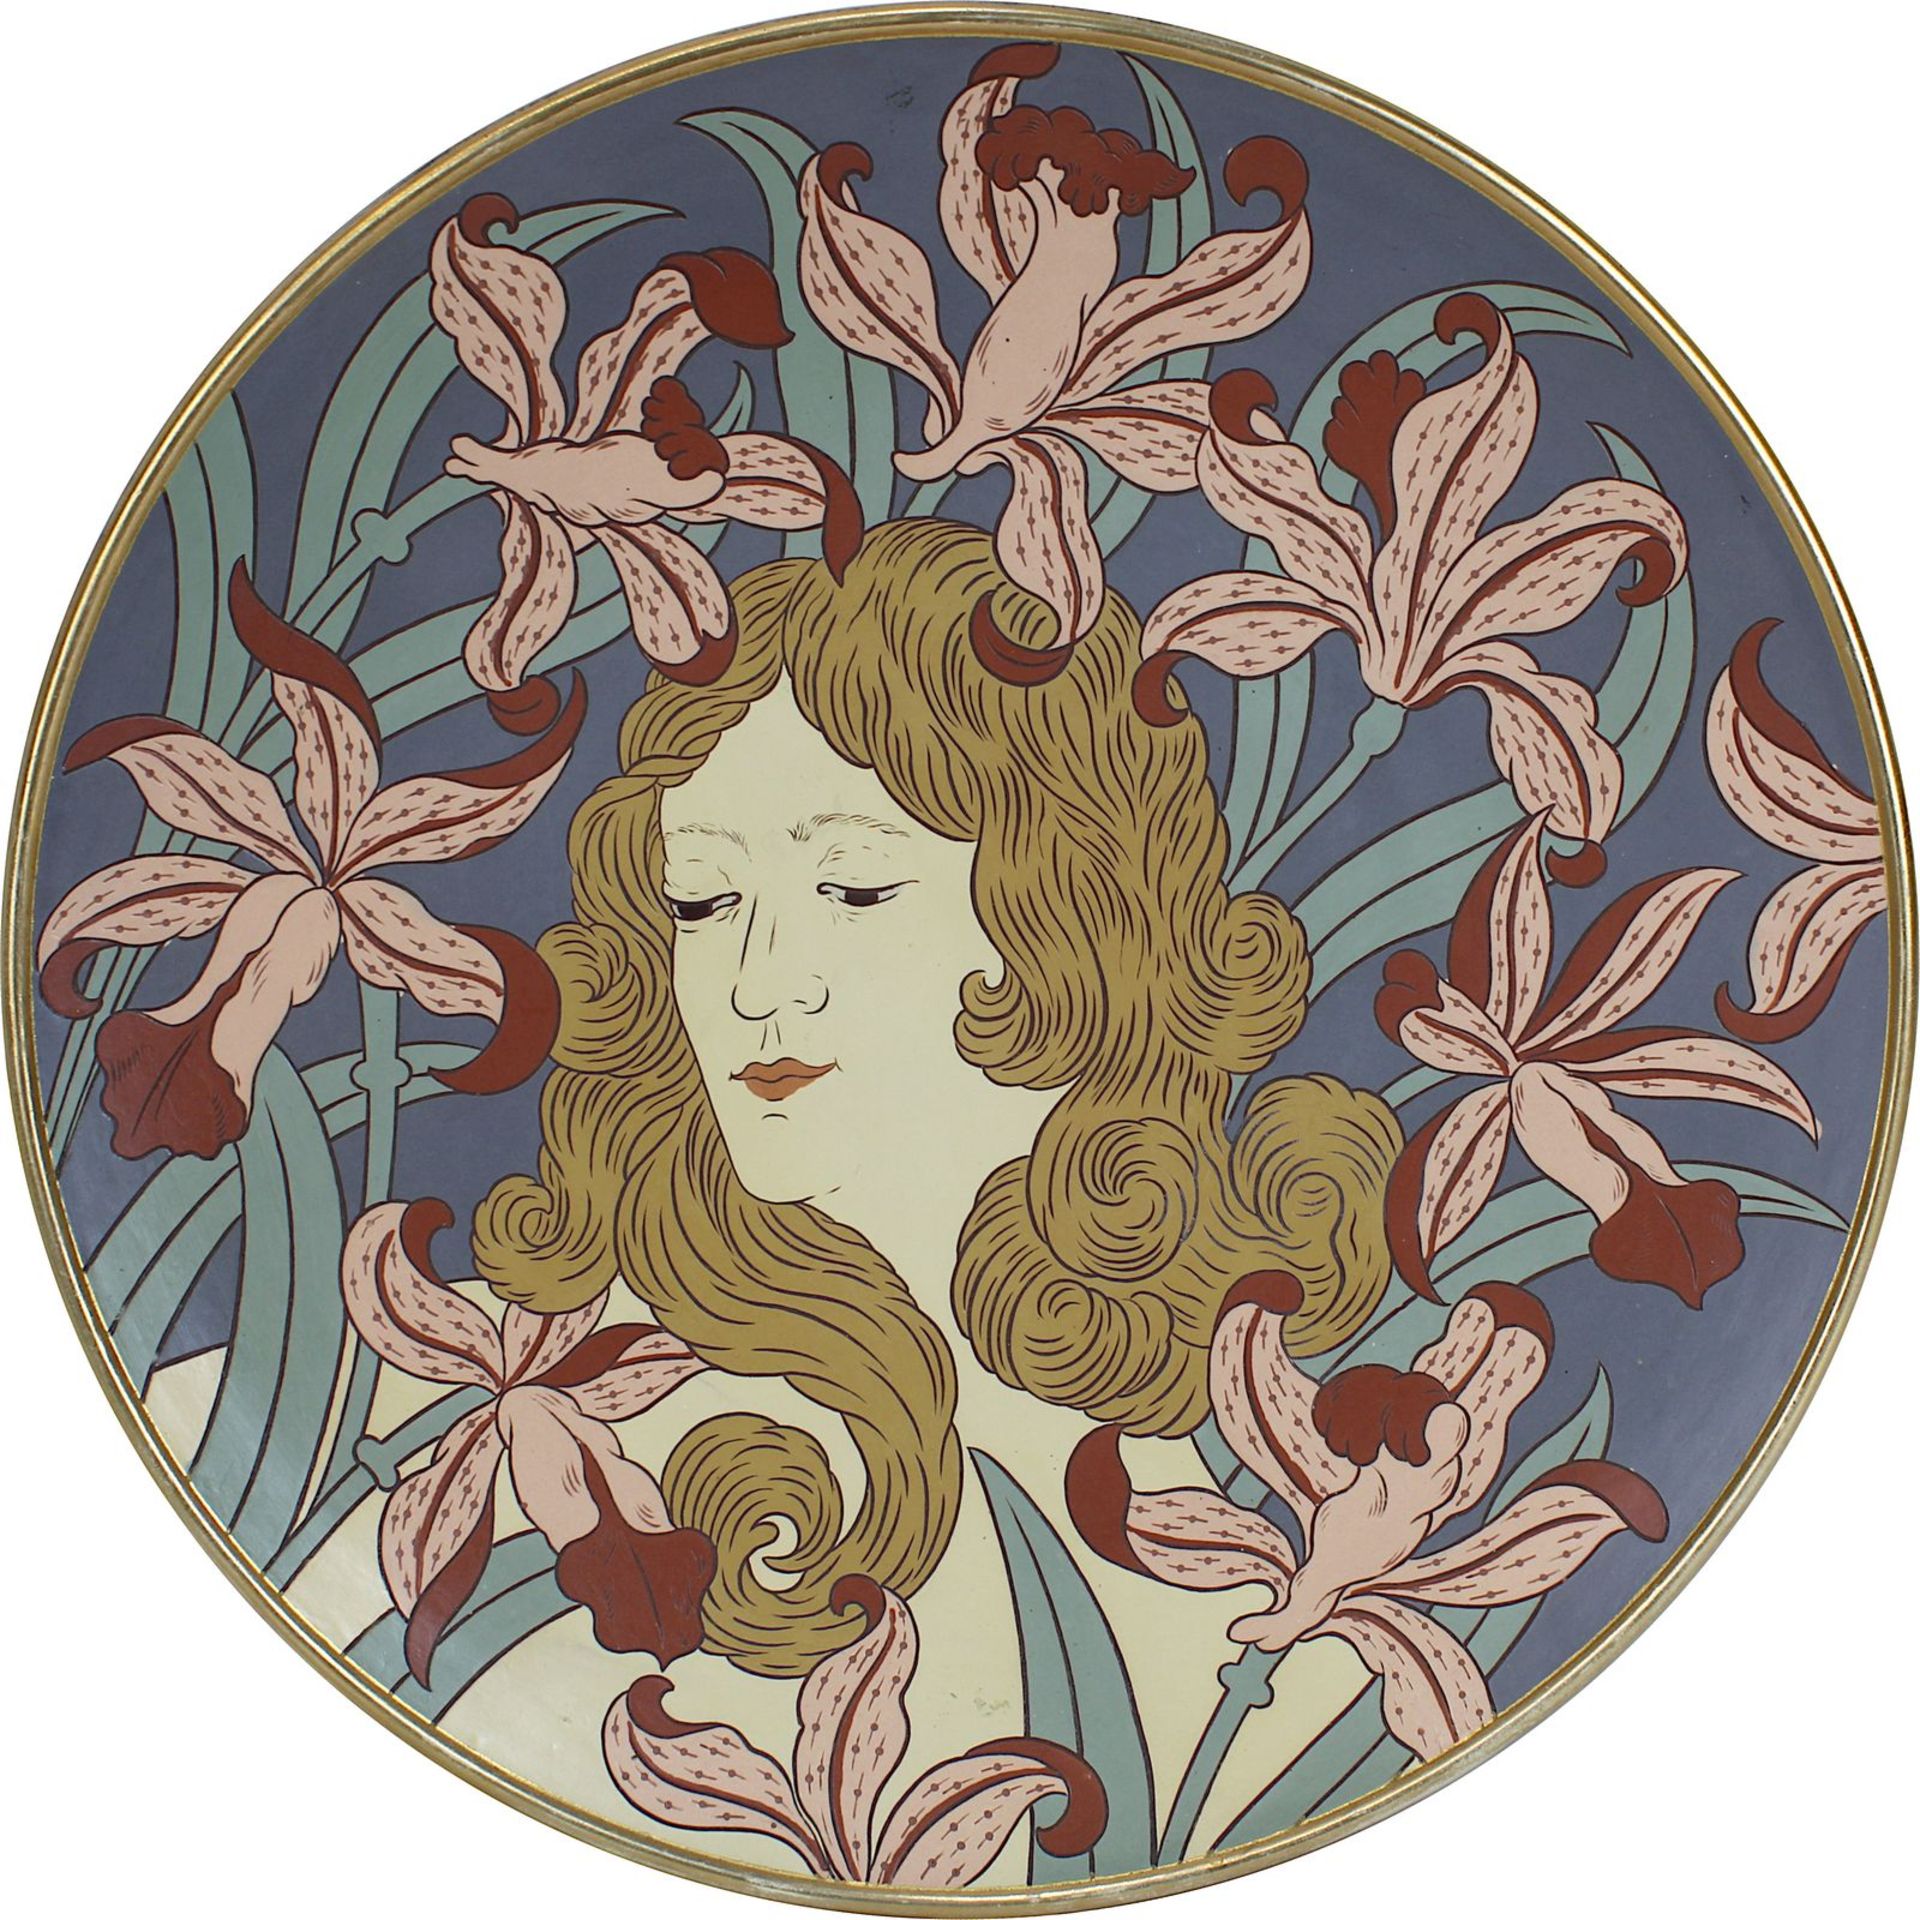 Villeroy & Boch Jugendstil-Wandteller mit Frauenkopf, Mettlach 1899, Chromolit-Keramik, Schauseite